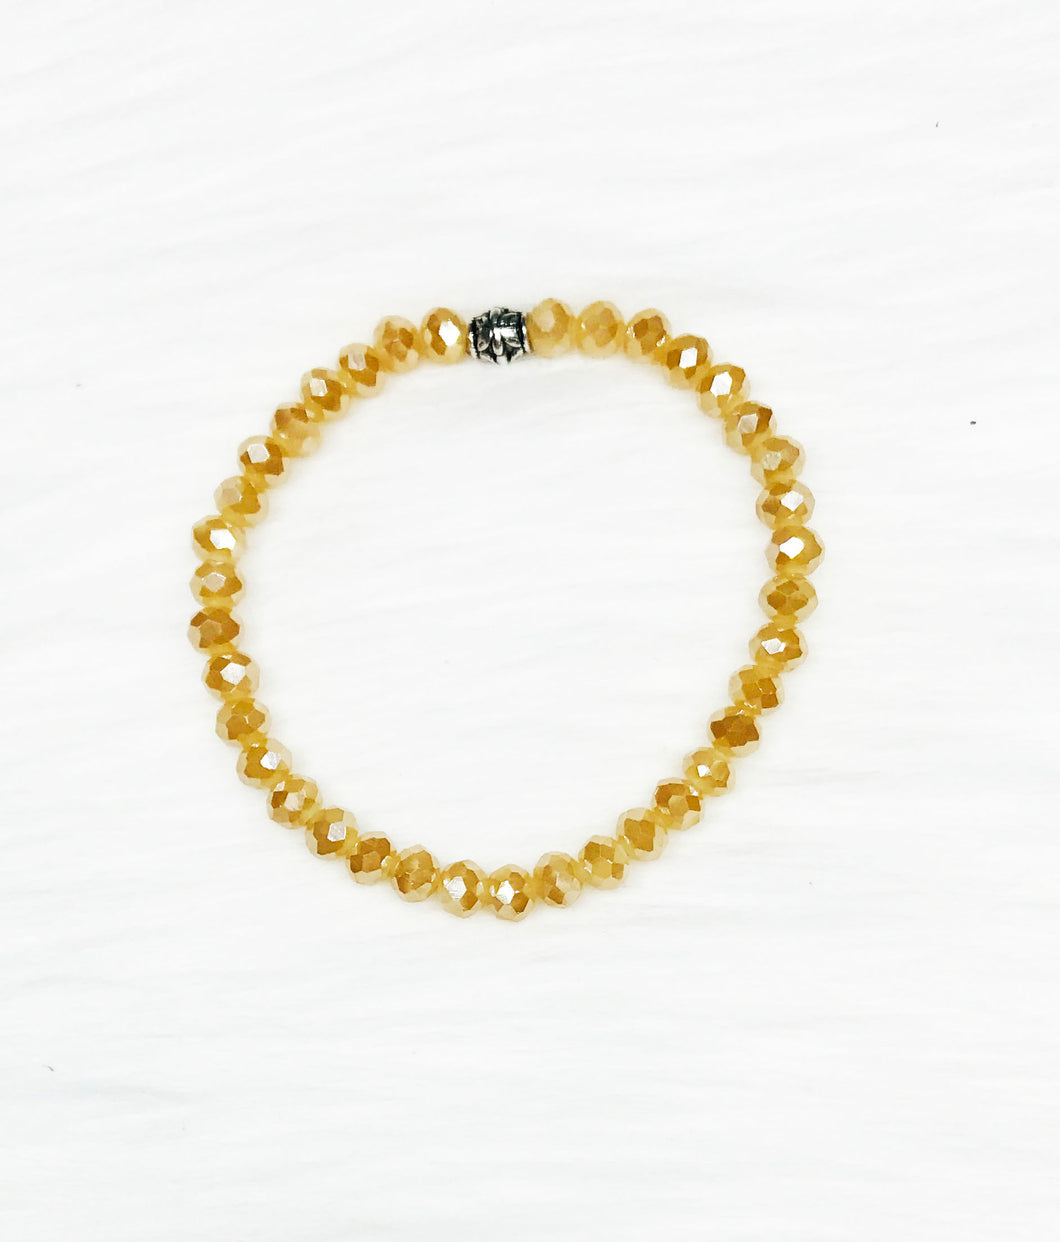 Glass Bead Stretchy Bracelet - B1549